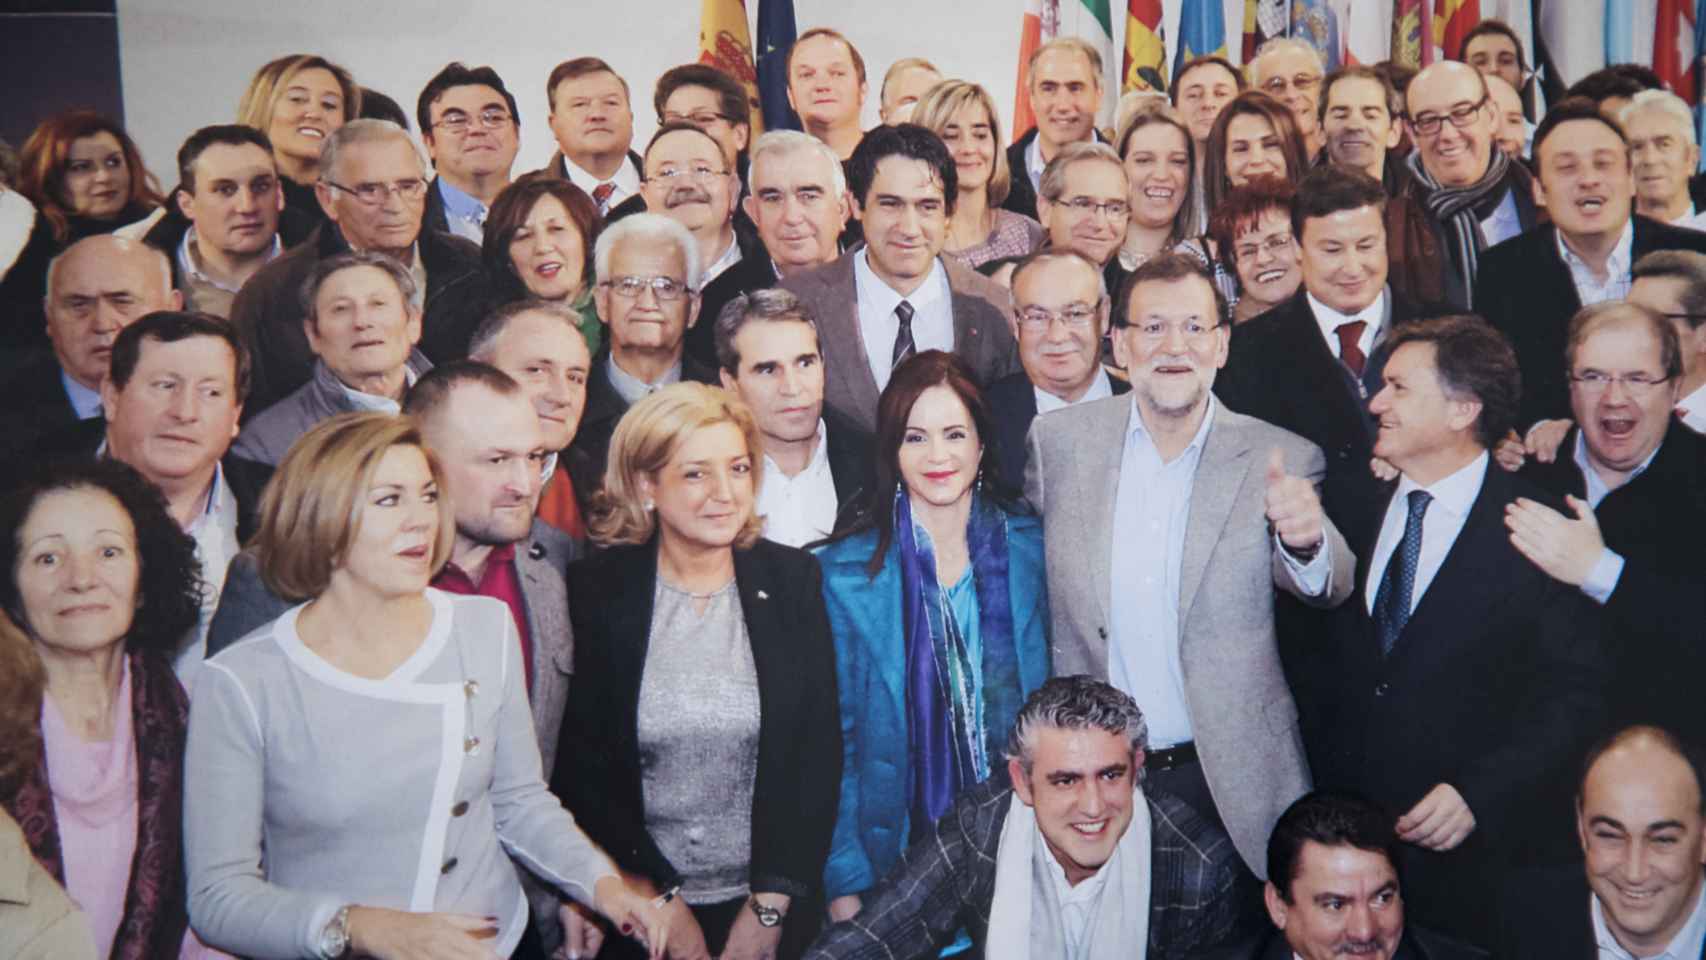 A Ricardo Díez (en el centro con pelo blanco) le han hecho toda clase de homenajes por ser el alcalde más antiguo de España. Aquí, con miembros del PP a nivel nacional.